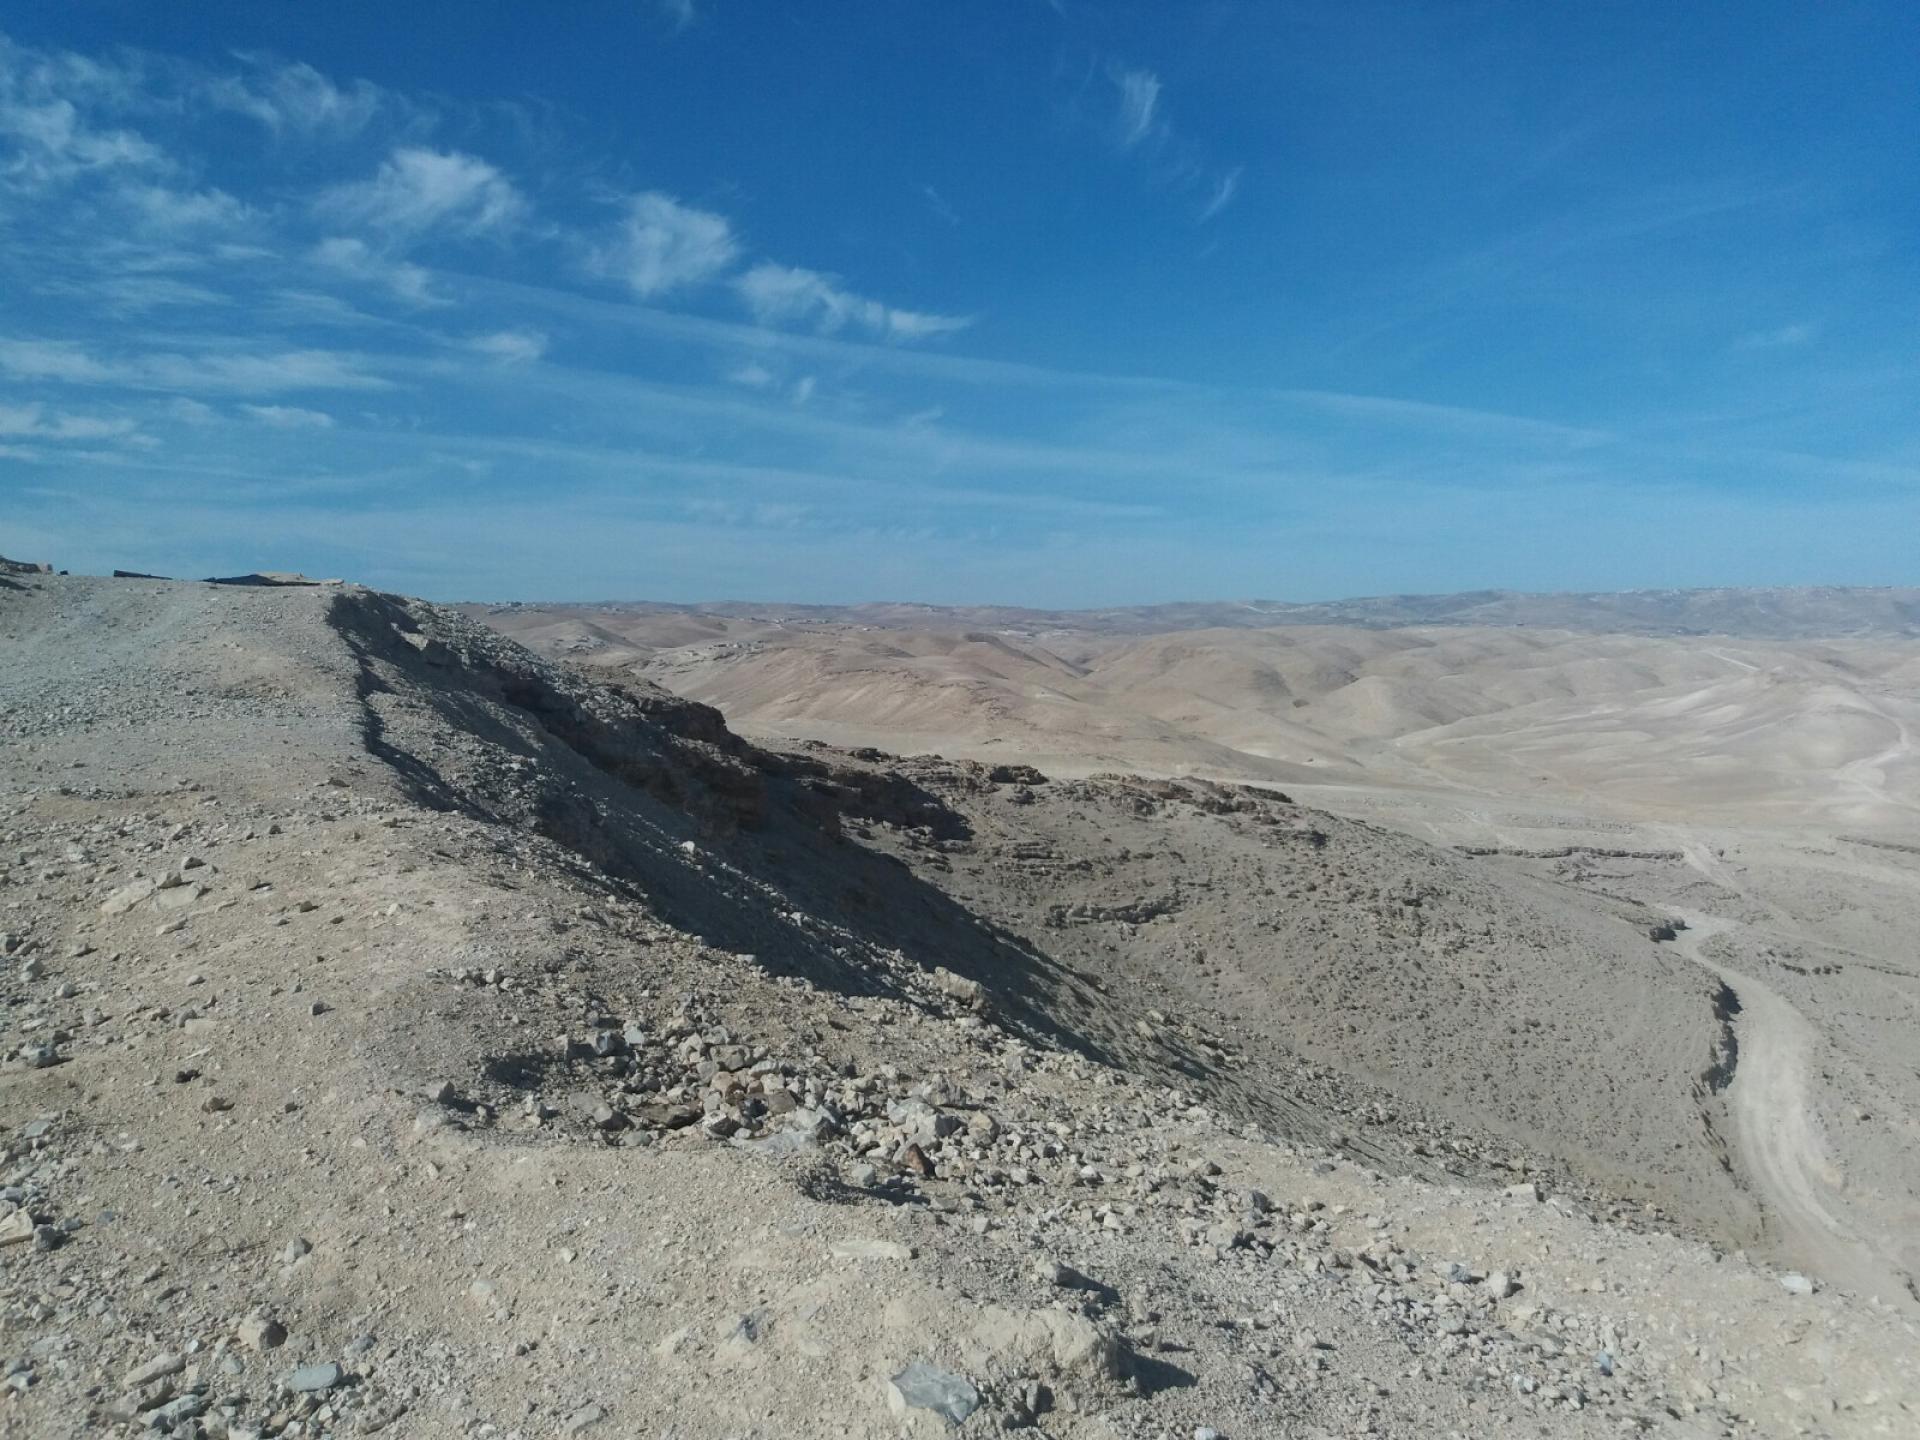 The landscape from Masafer Yatta near Huda's kindergarten